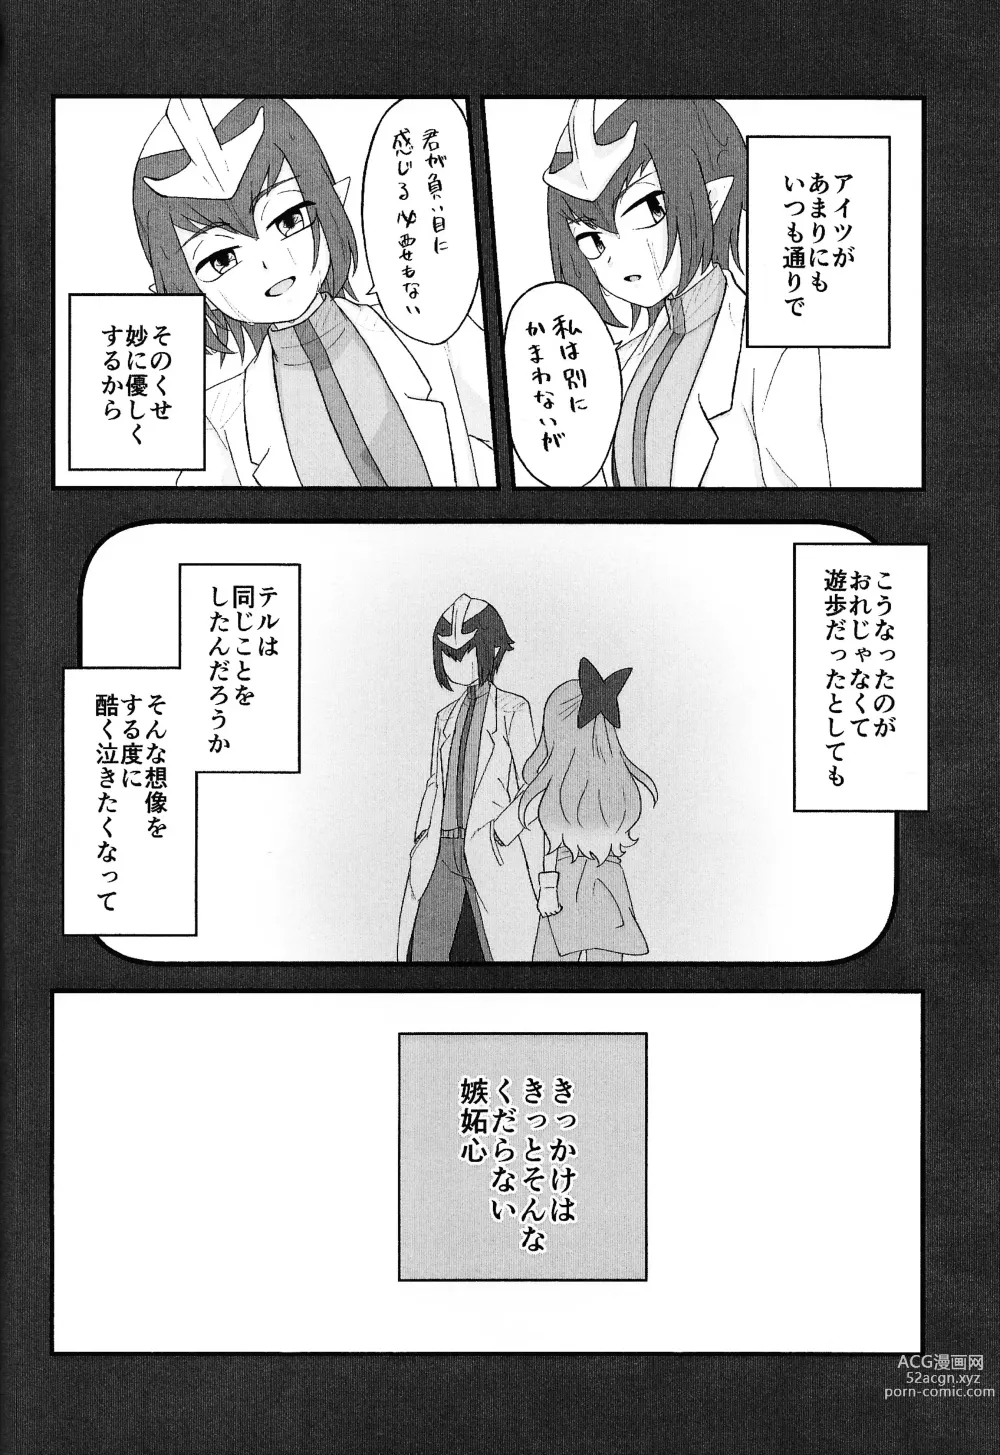 Page 37 of doujinshi Pandoranohako ka kindan no kajitsu ka